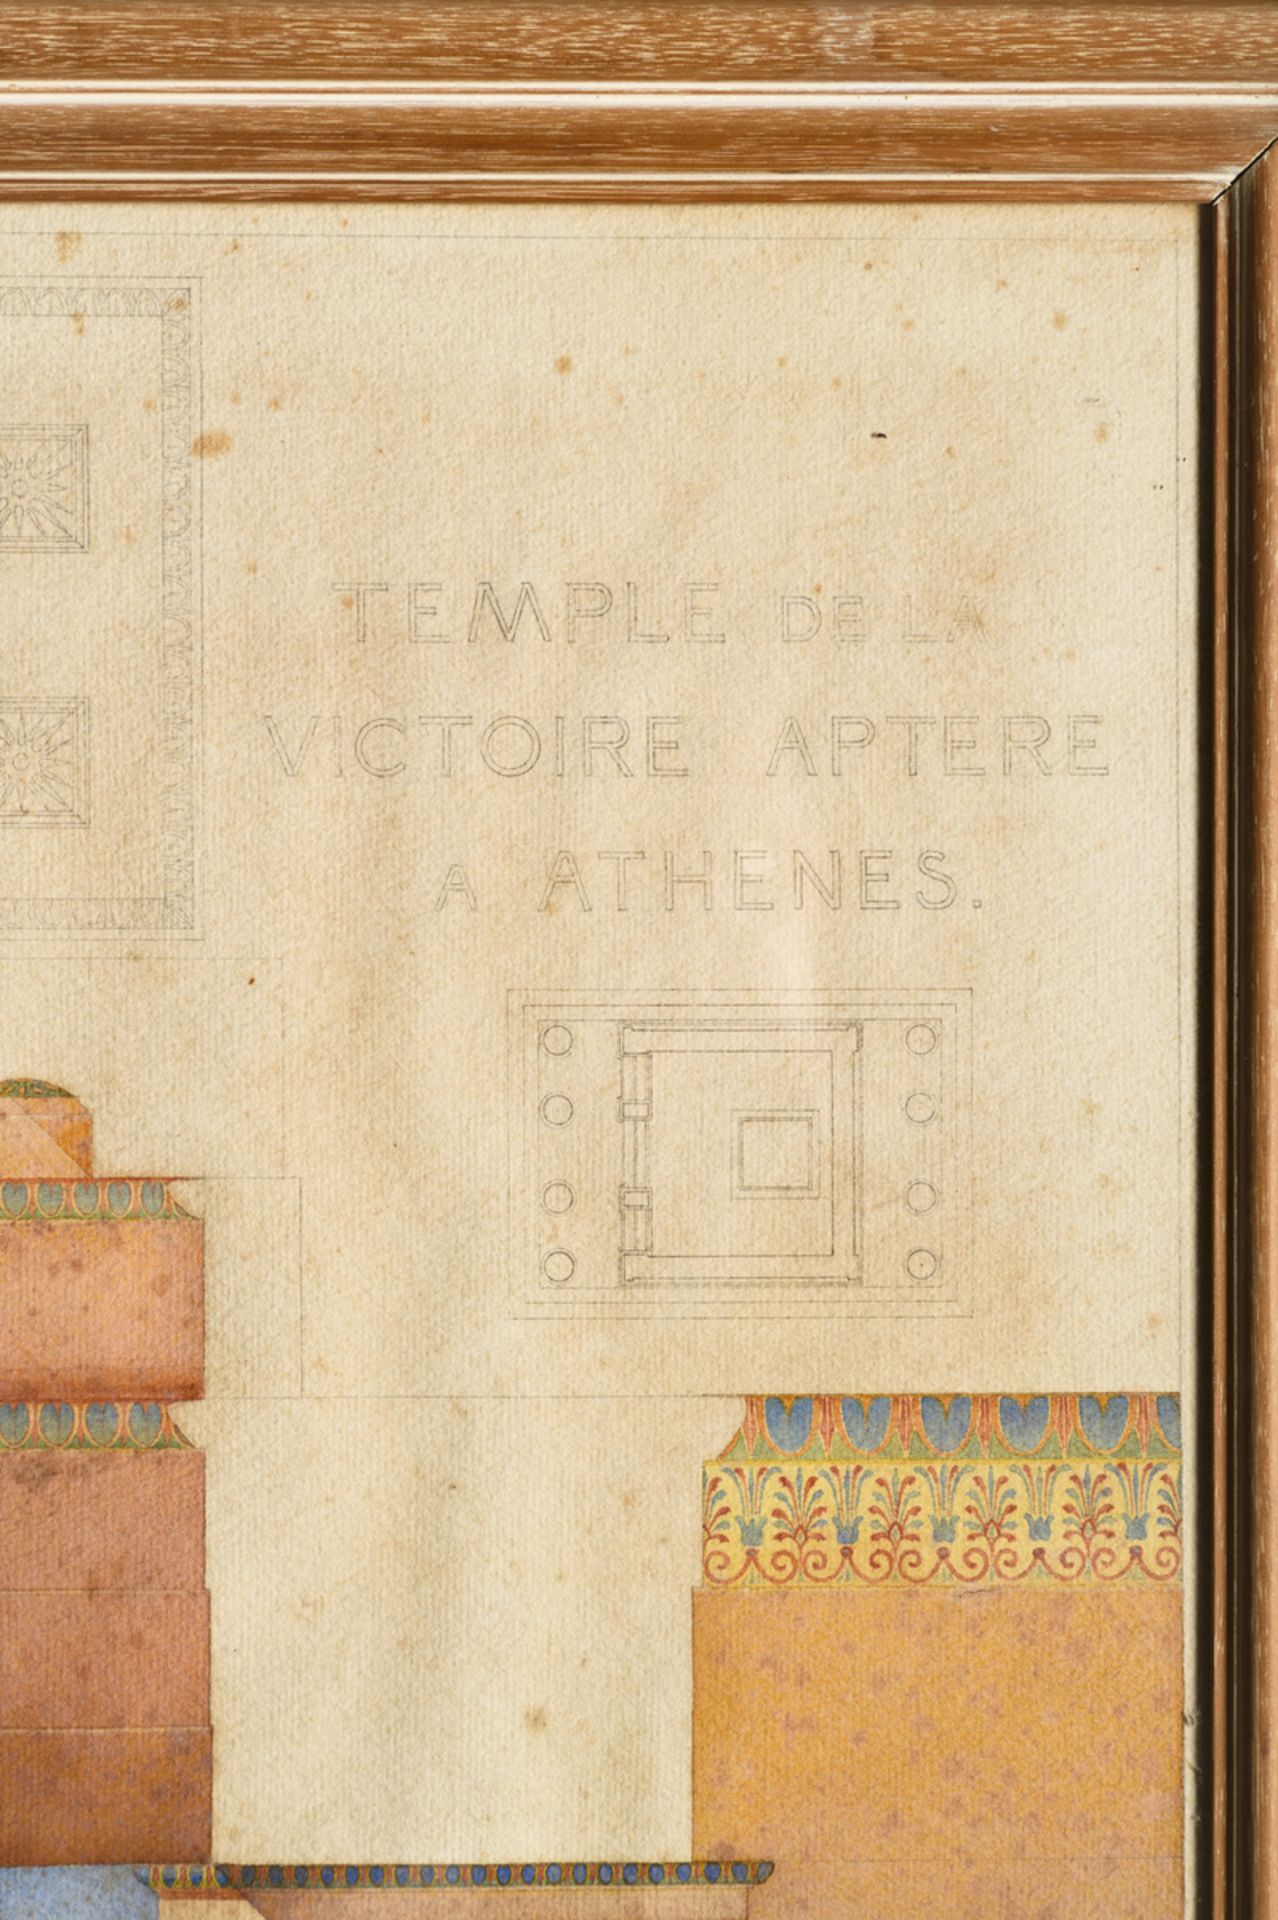 Vereecke 1921: architectural drawing 'Temple de la victoire Aptere ‡ AthÈne' (63x82cm) (*) - Bild 3 aus 5